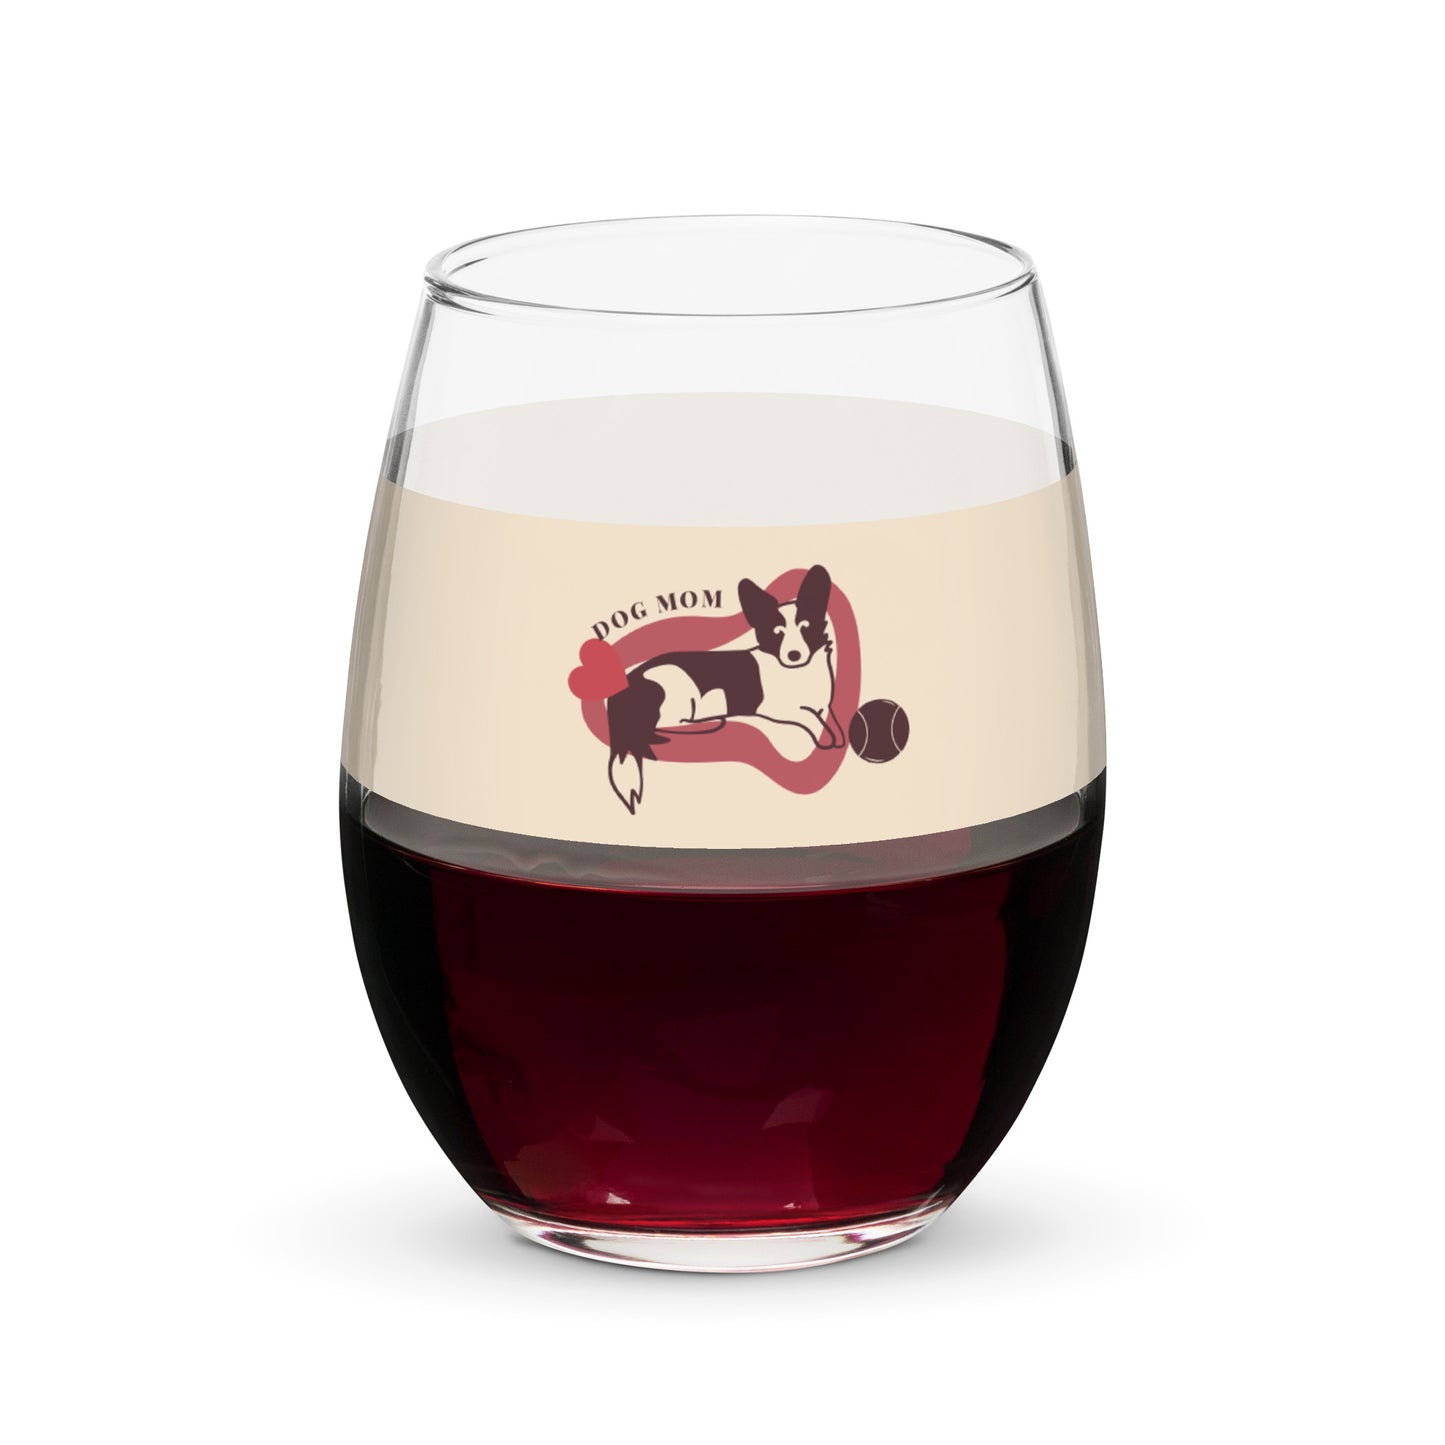 Dog Mom Stemless wine glass